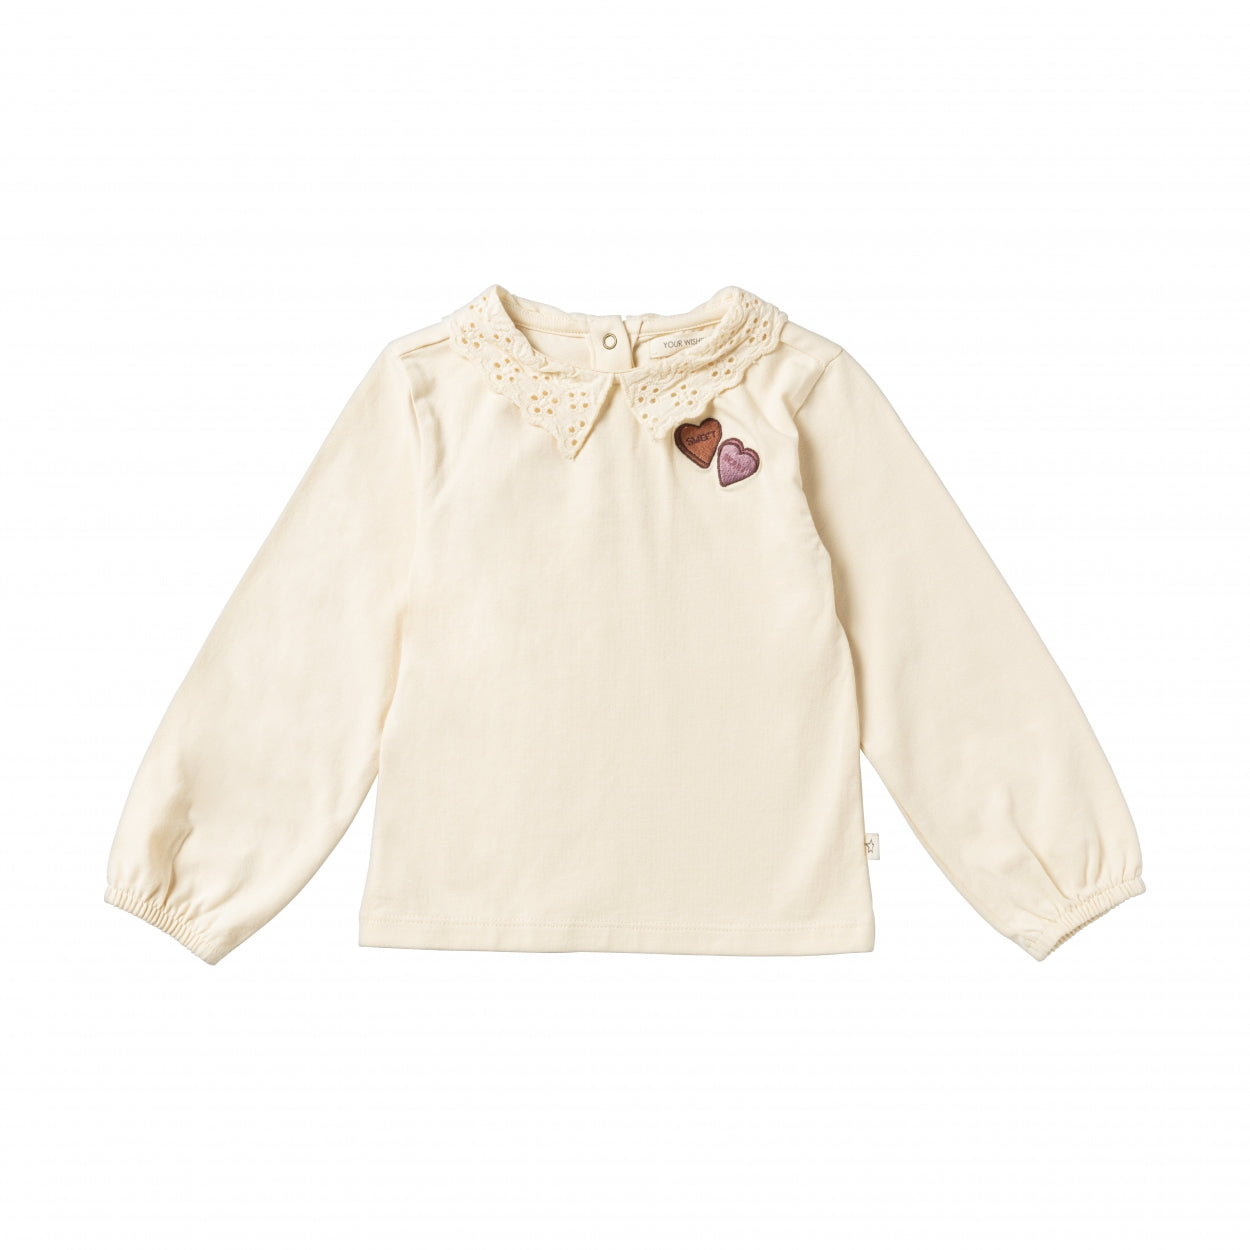 Meisjes Shirt Sweet Heart | Melo van Your Wishes in de kleur Honeycomb in maat 98.